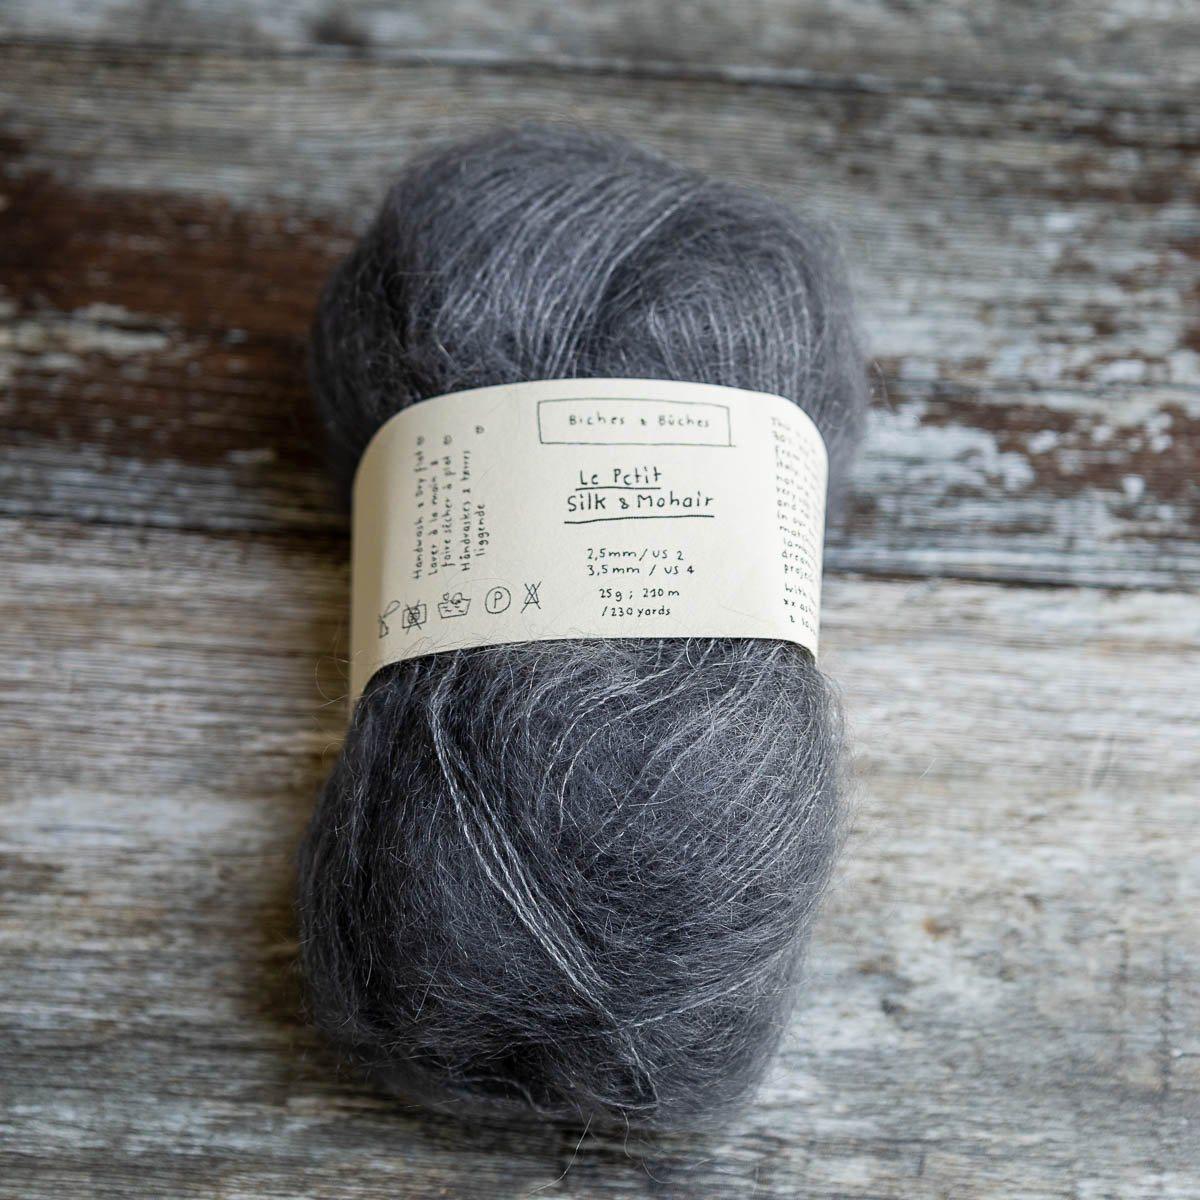 Biches & Bûches Biches & Bûches Le Petit Silk & Mohair - Dark Blue - Lace Knitting Yarn